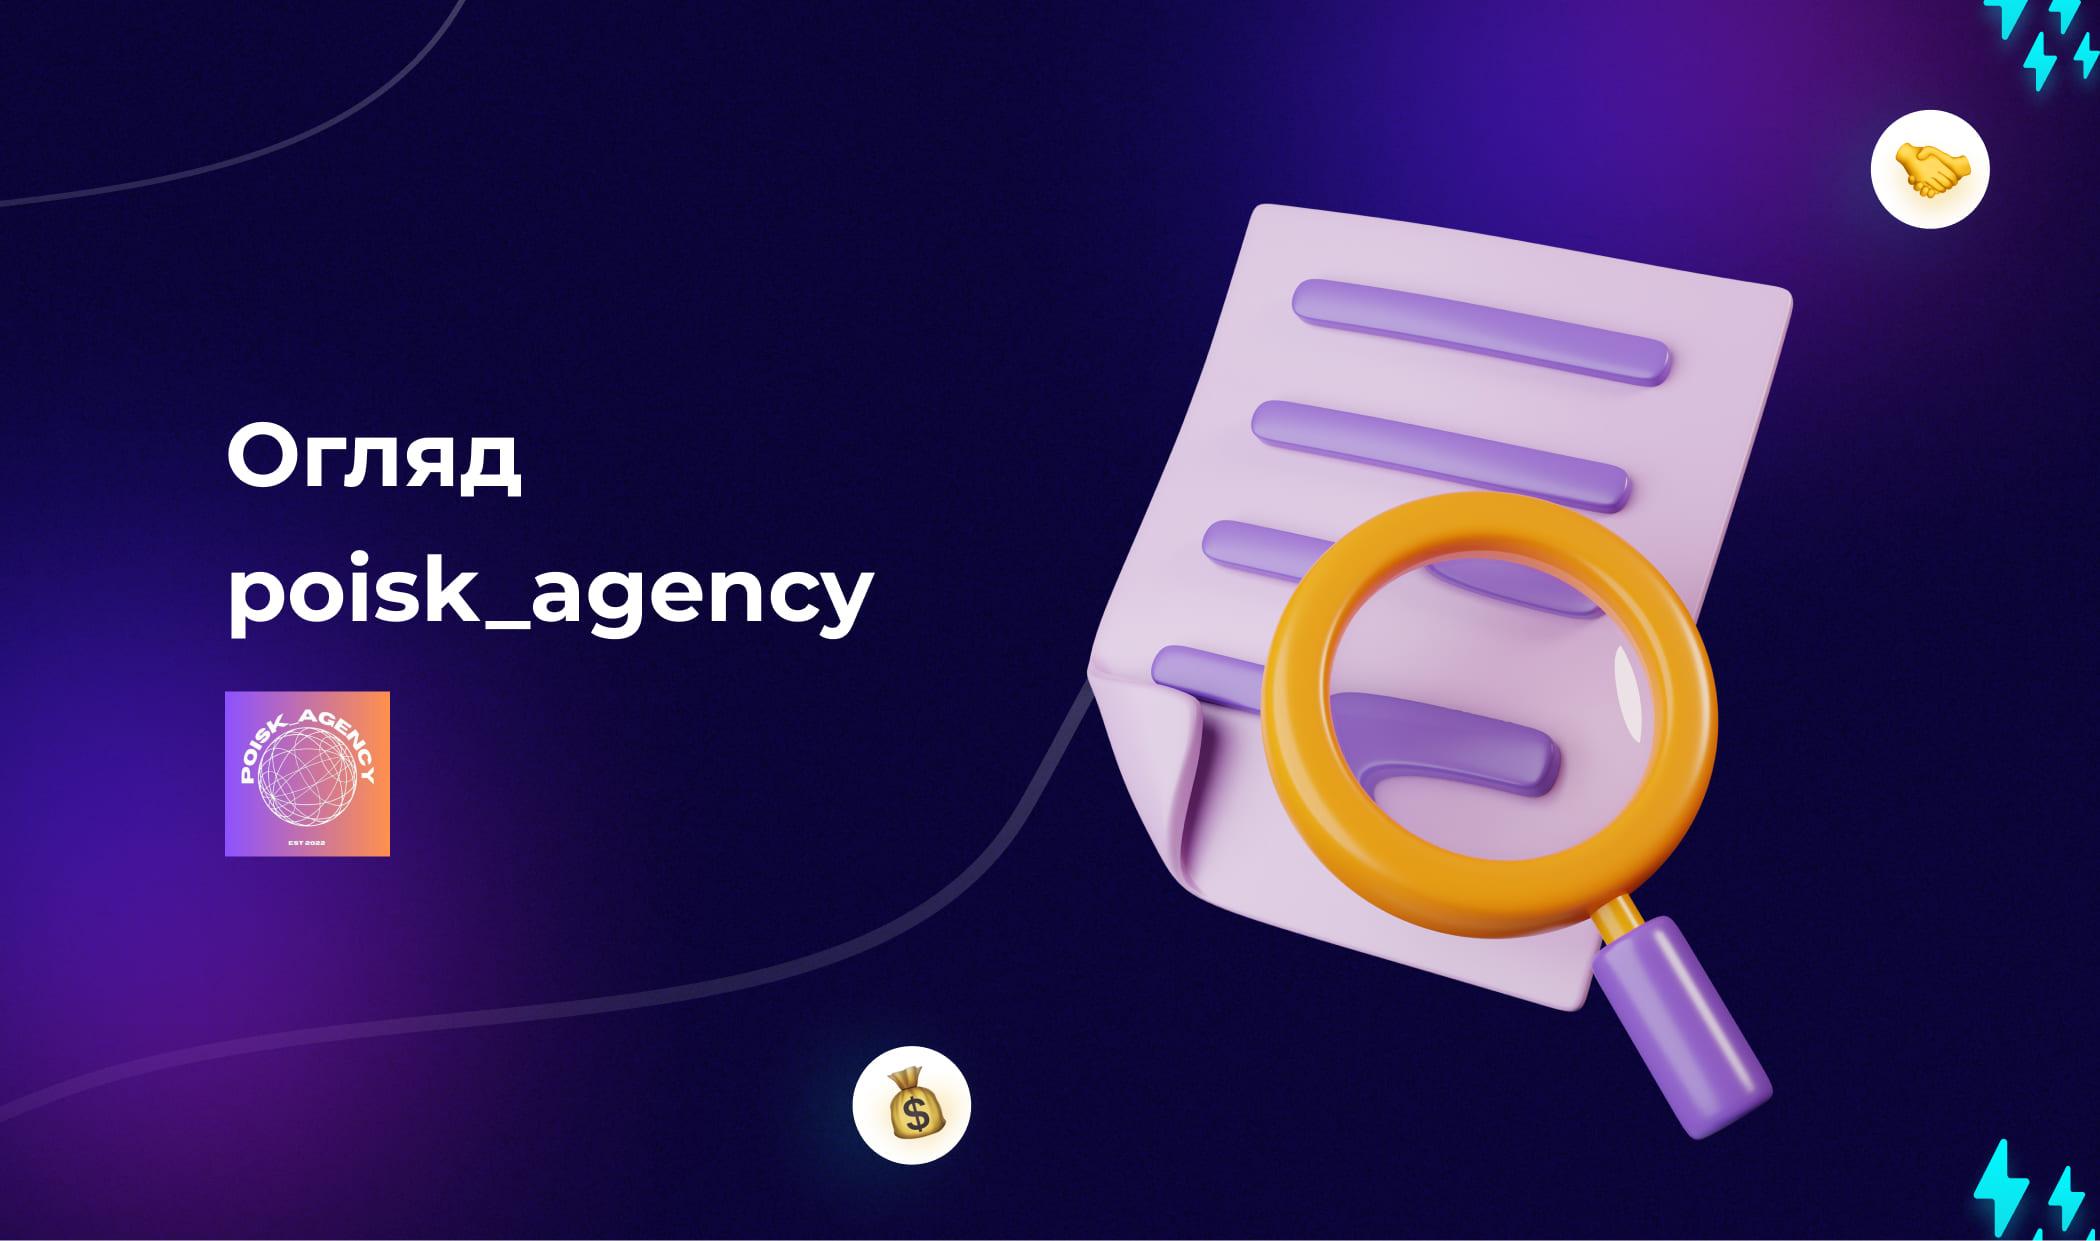 Огляд poisk_agency: агентські облікові записи BIGO Ads, KWAI, Unity, Mintegral та Xiaomi